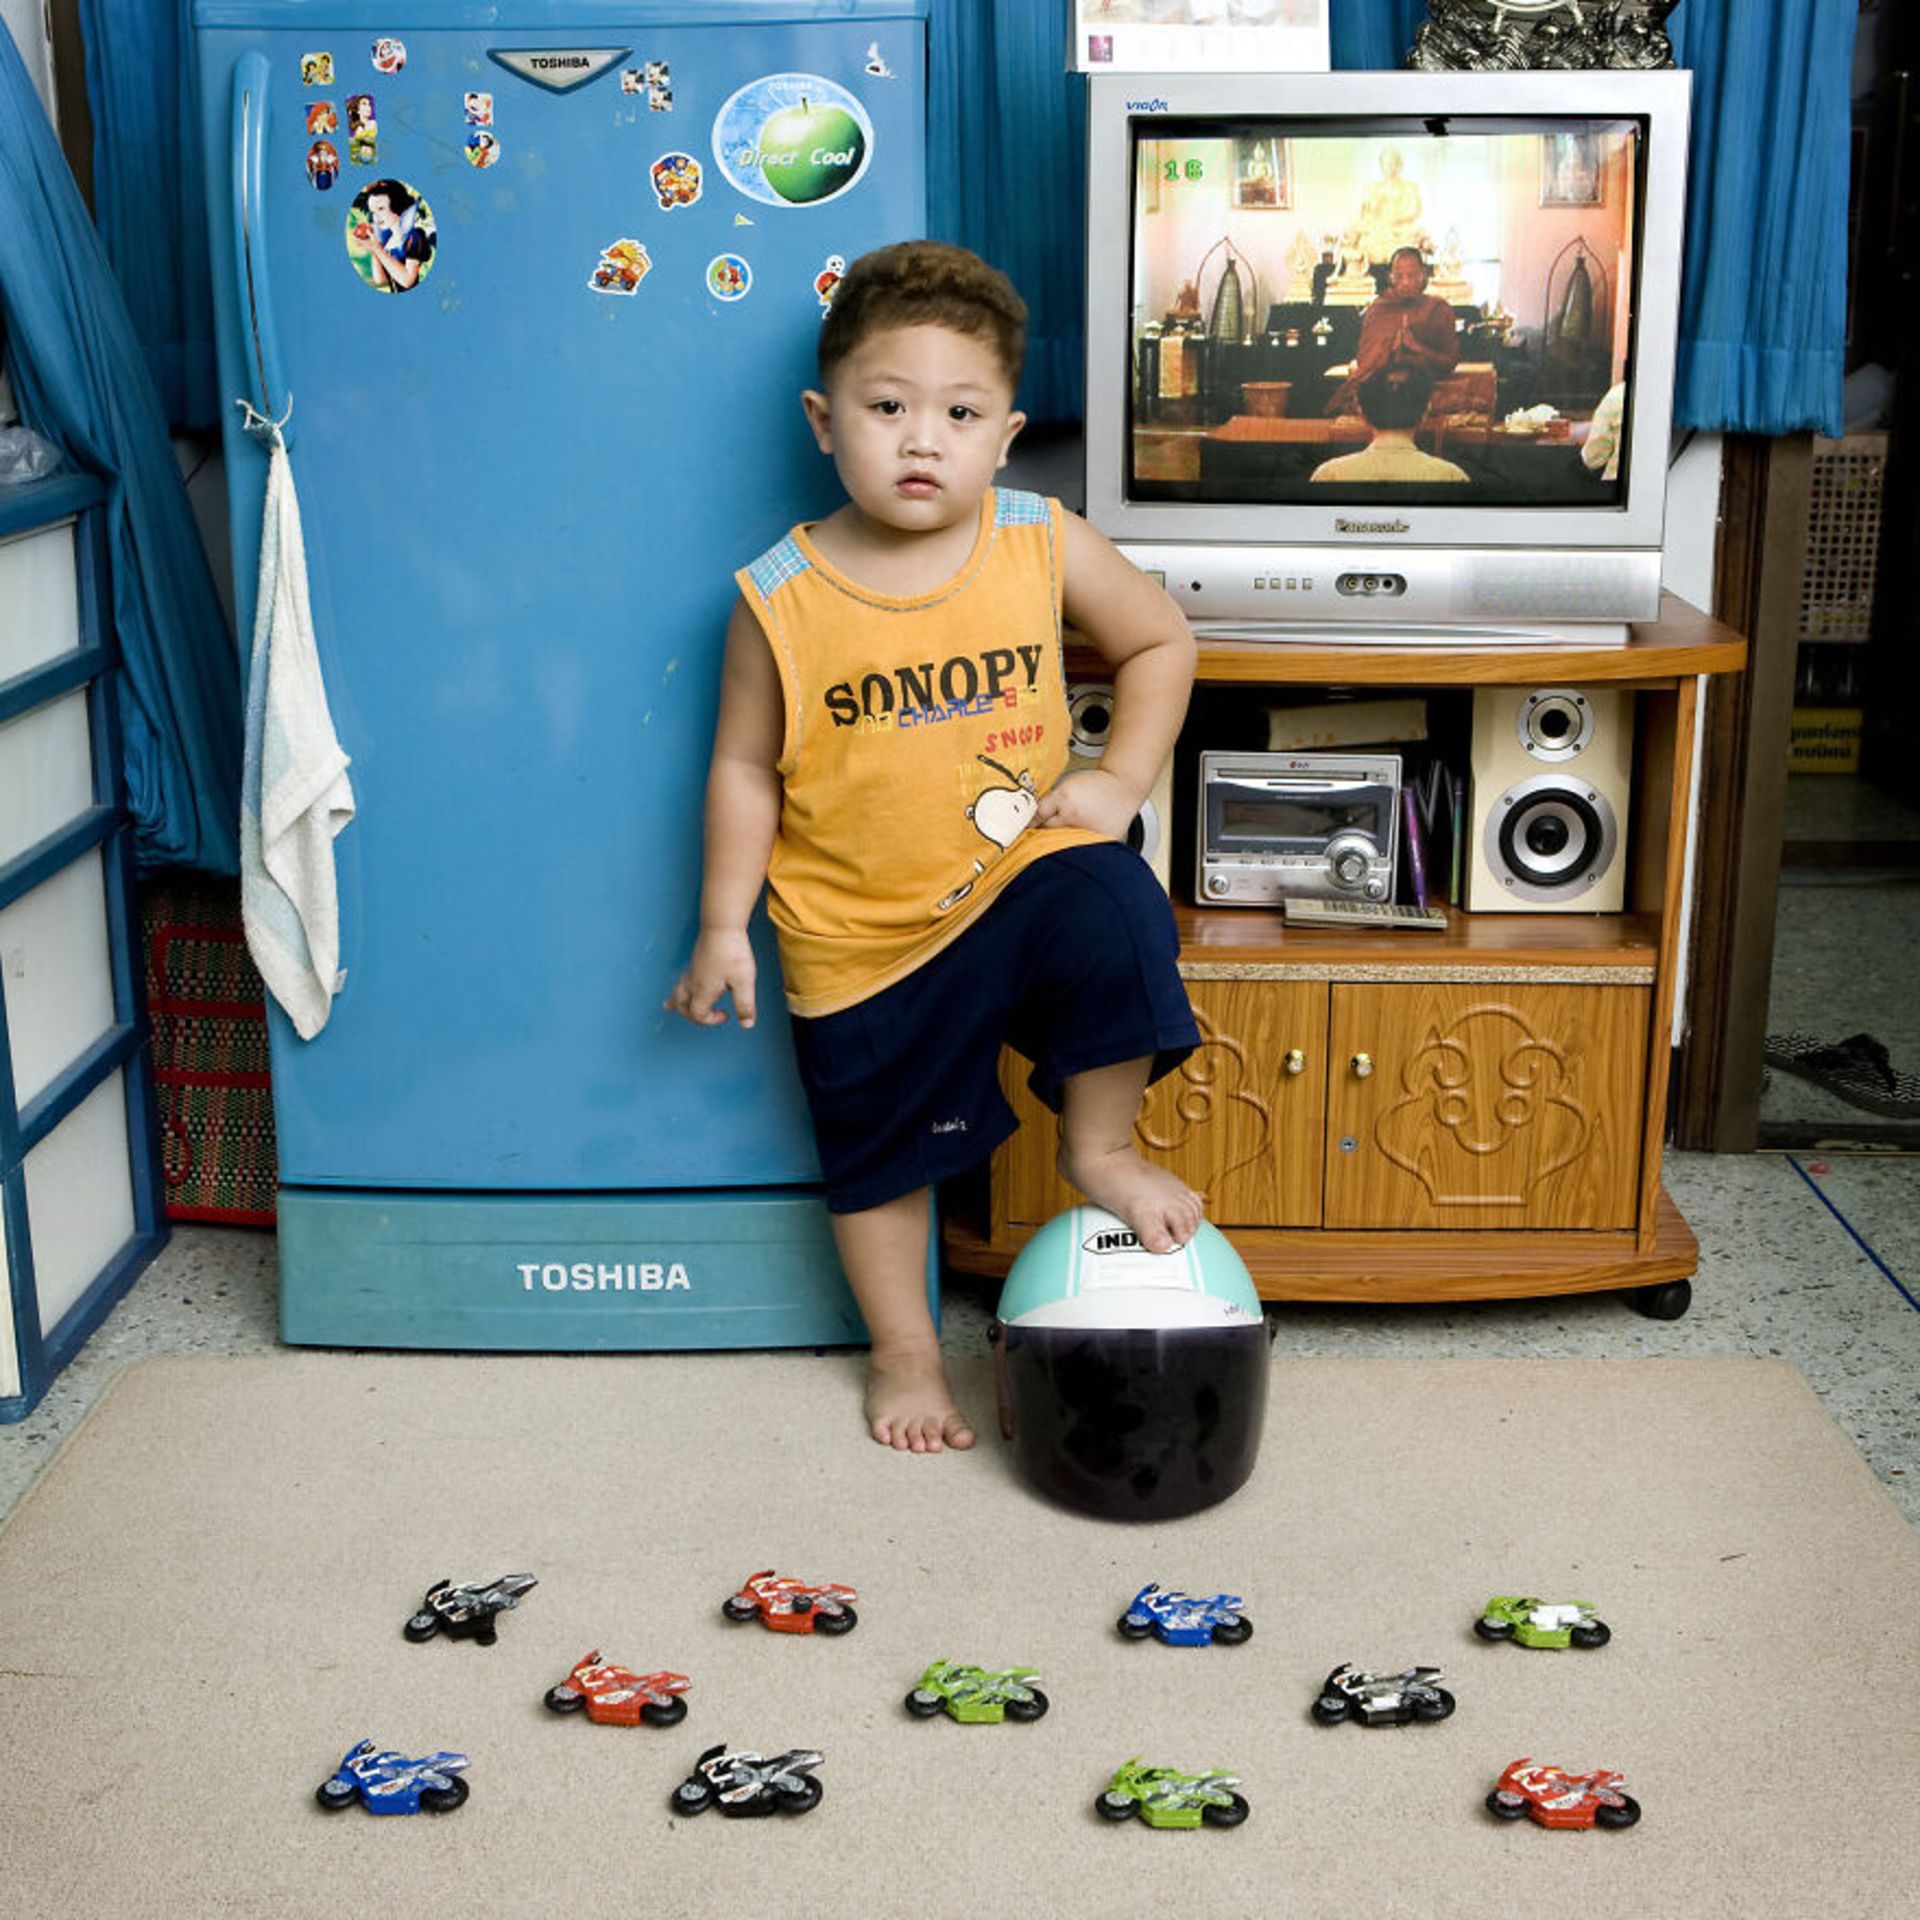 پسر بچه با توپ و ماشین اسباب بازی